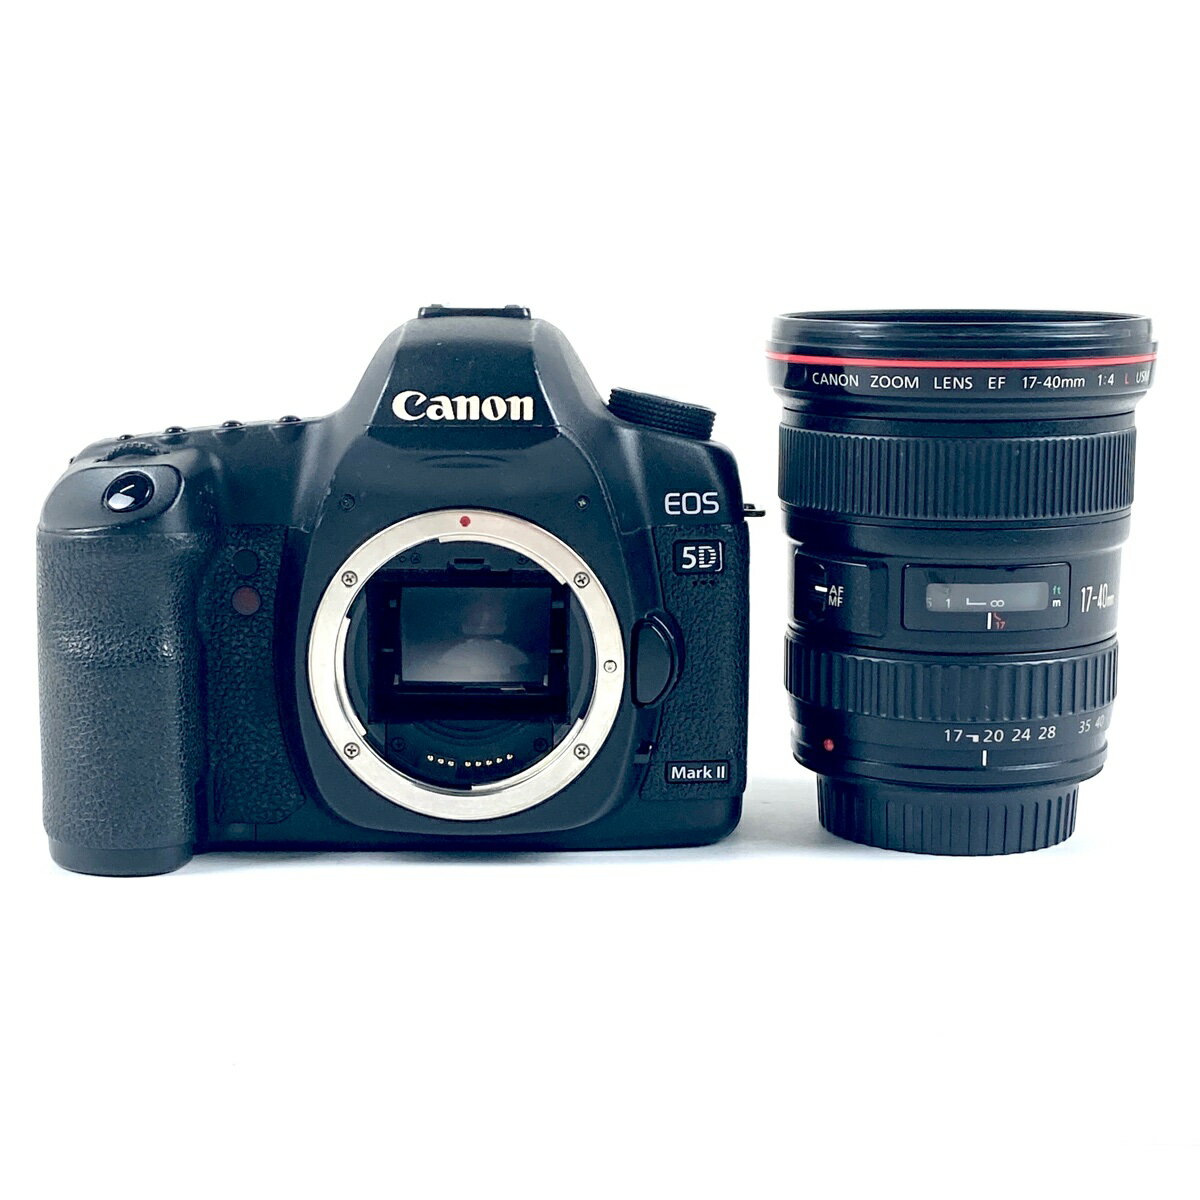 キヤノン Canon EOS 5D Mark II + EF 17-40mm F4L USM デジタル 一眼レフカメラ 【中古】